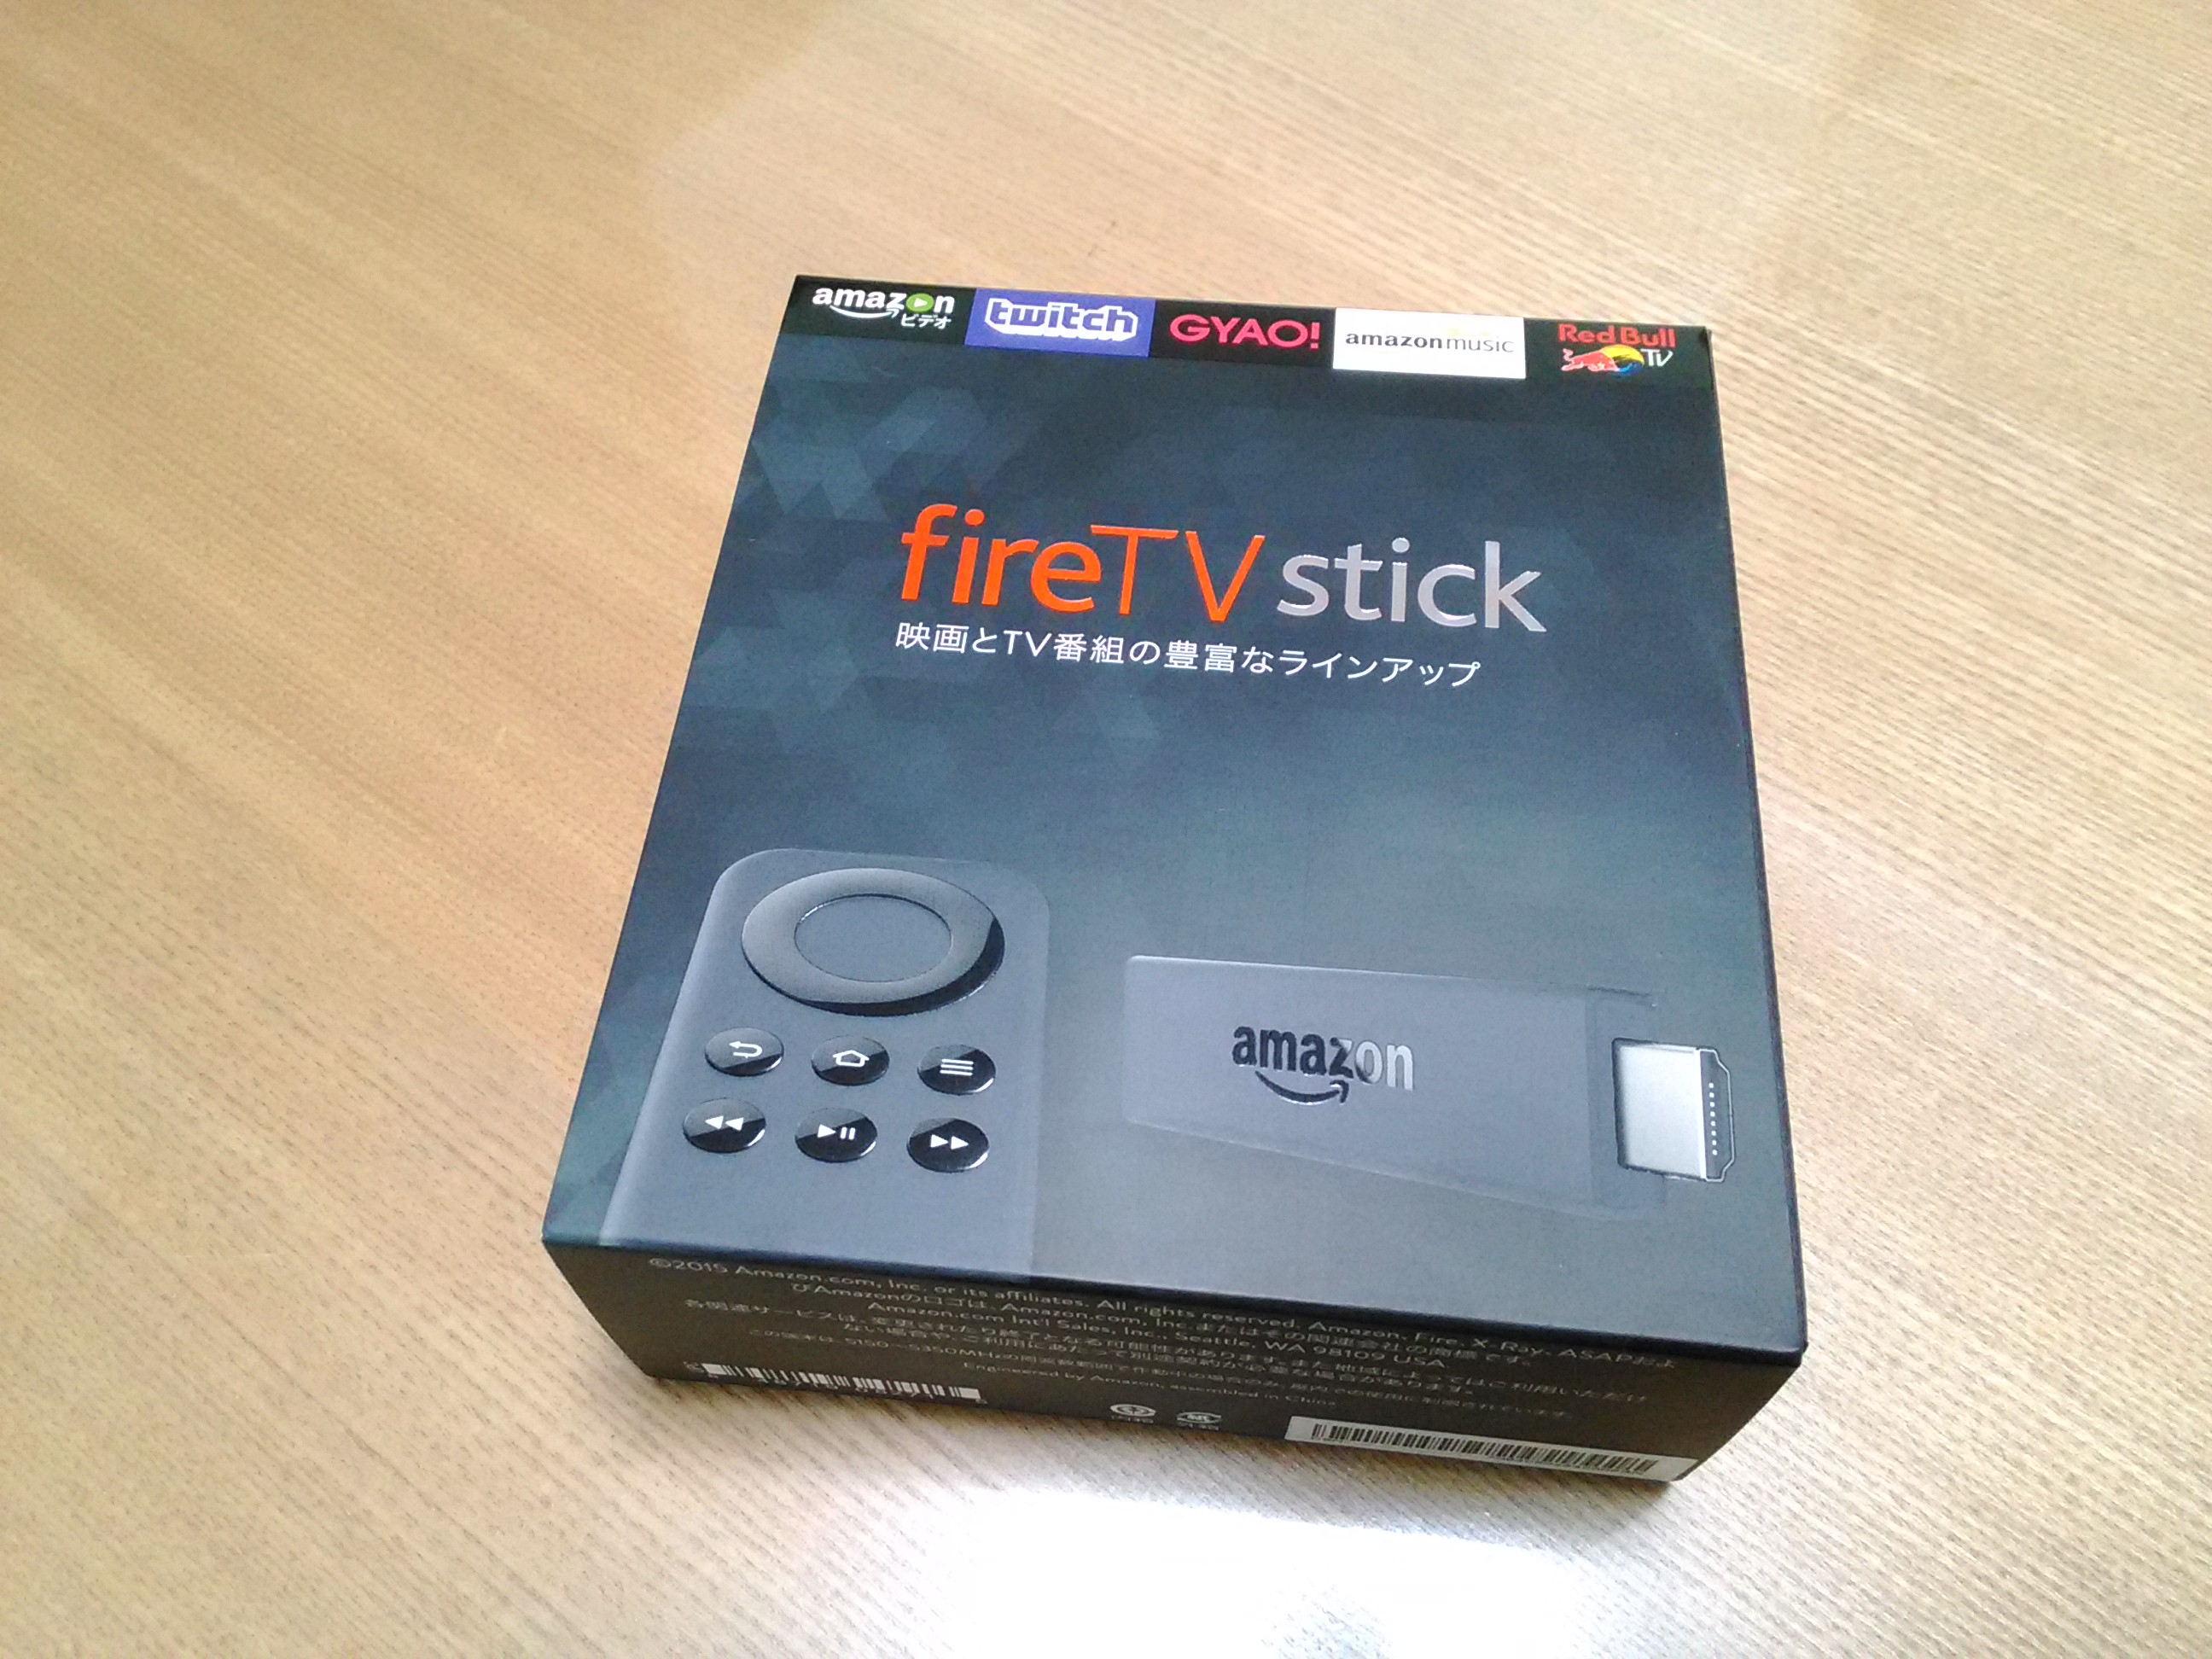 Fire Tv Stickがすごい 生活スタイルを変えてしまうamazonプライムサービスに注目